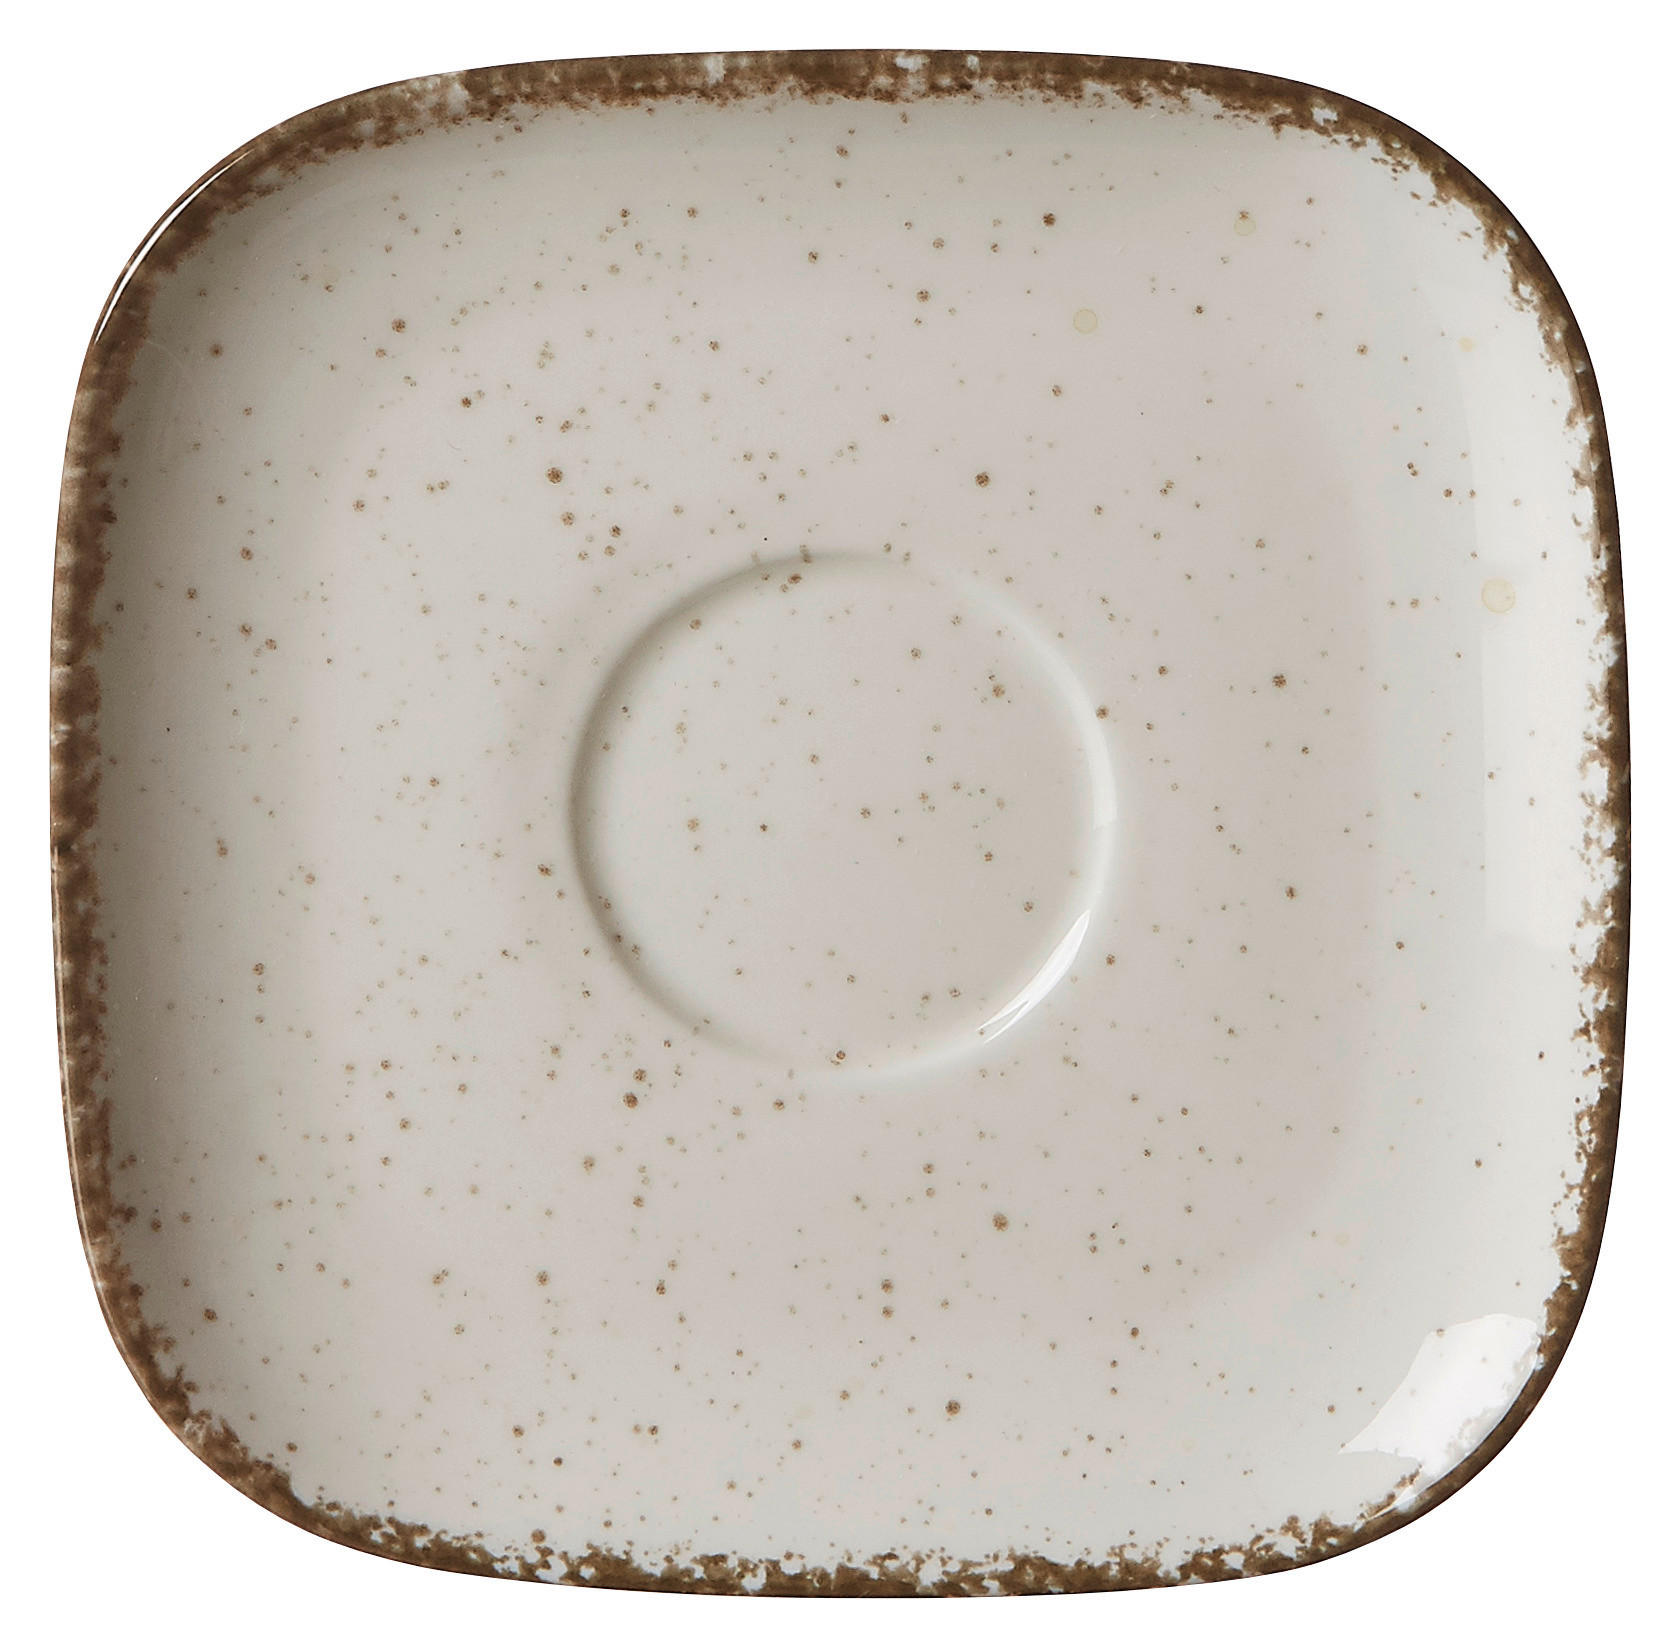 UNTERTASSE - Creme, LIFESTYLE, Keramik (14/14/2cm) - Ritzenhoff Breker